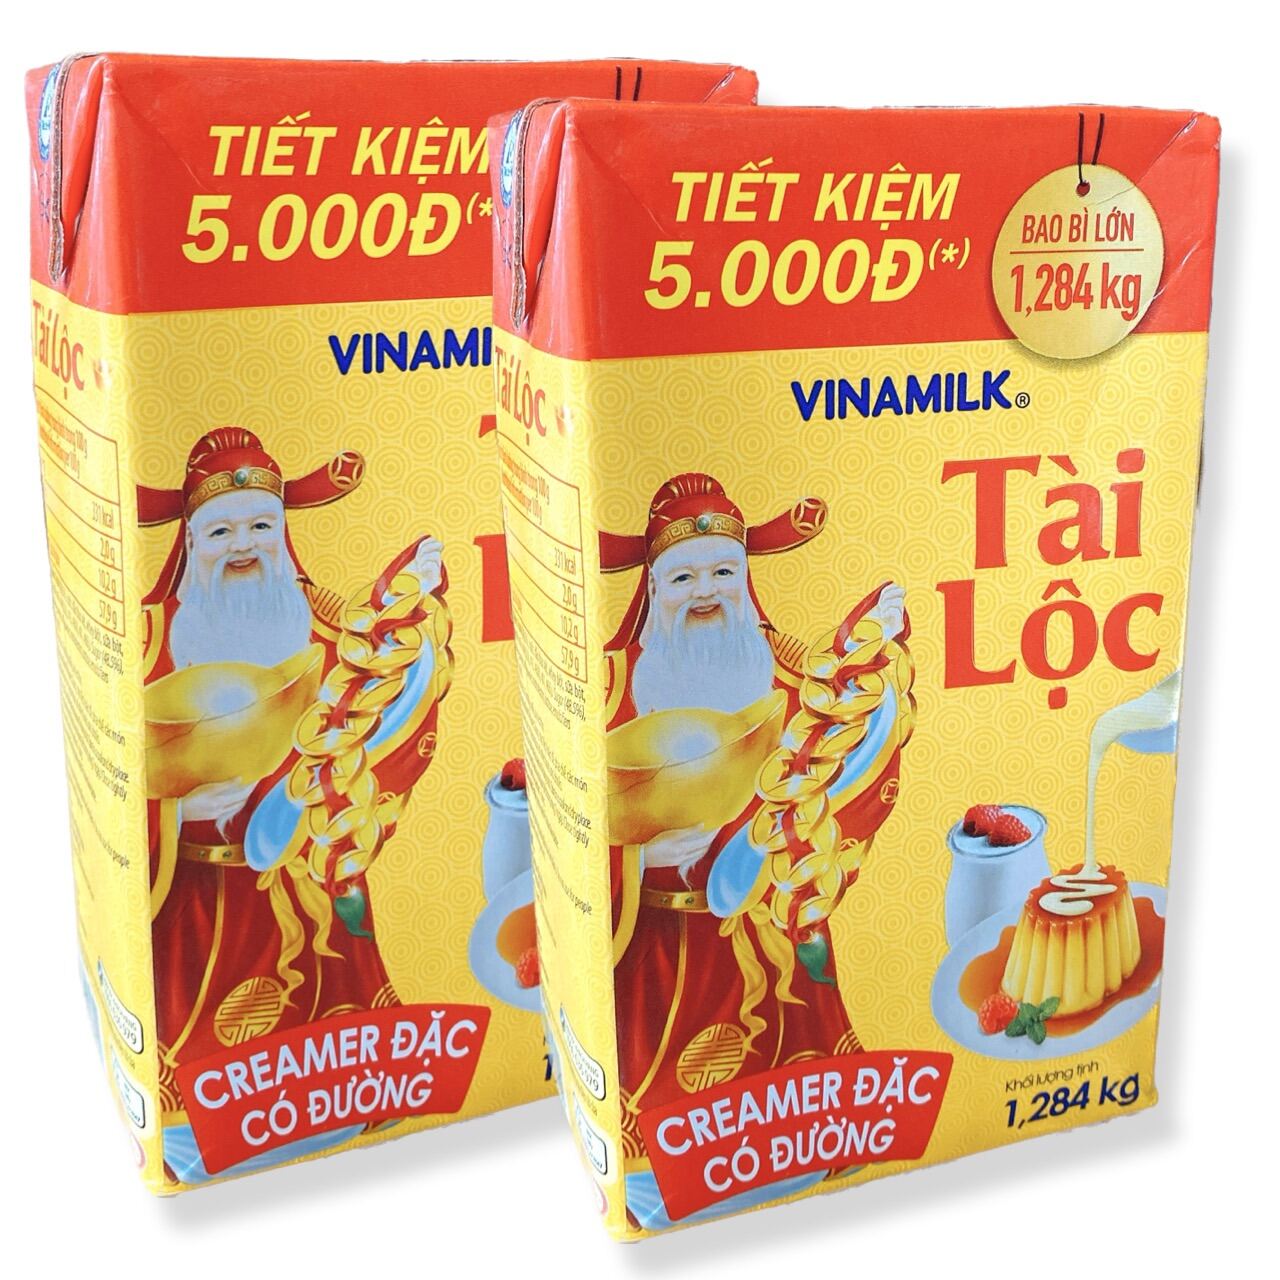 Combo 2 hộp 1 hộp  mỗi hộp 1,284kg sữa đặc có đường nguyên kem Tài Lộc